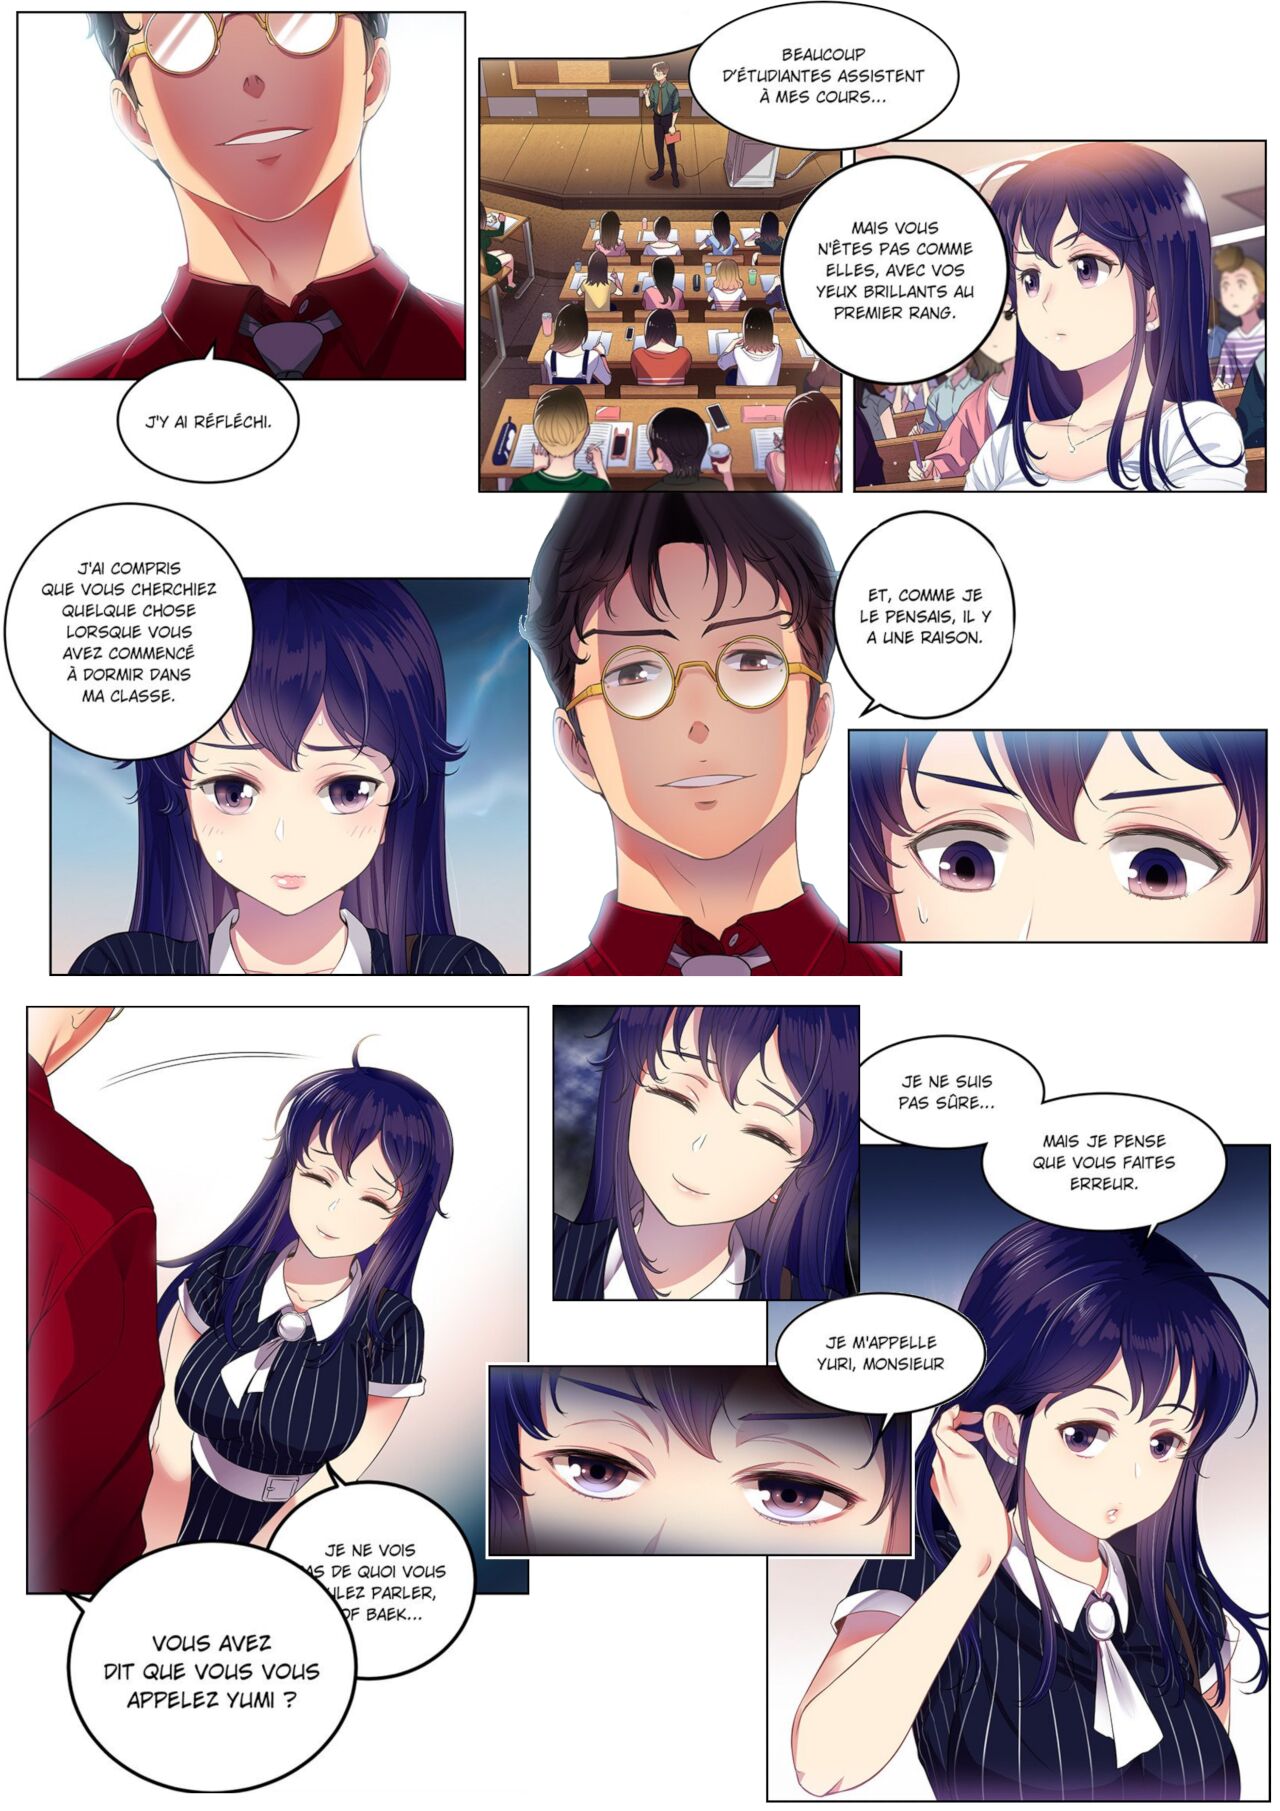 La double vie de Yuri numero d'image 65